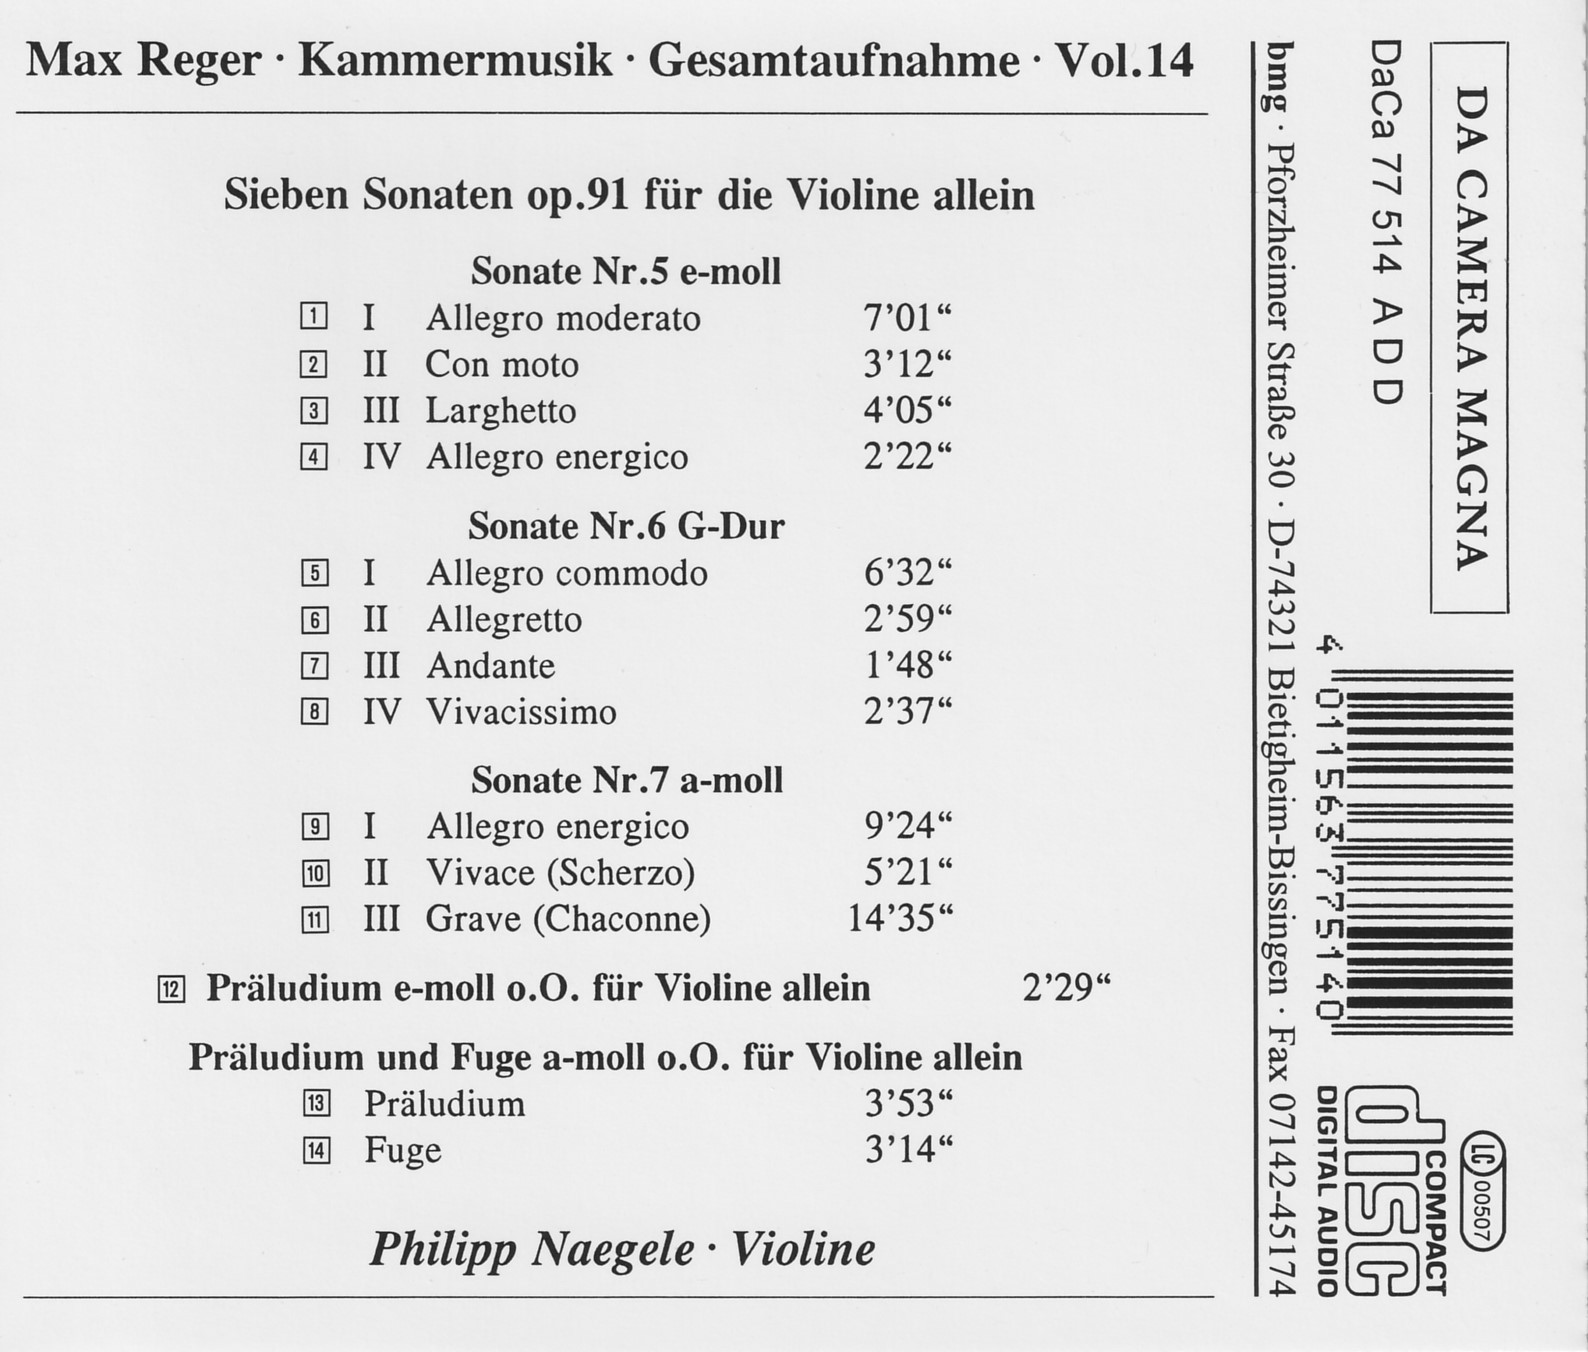 Max Reger - Kammermusik komplett Vol. 14